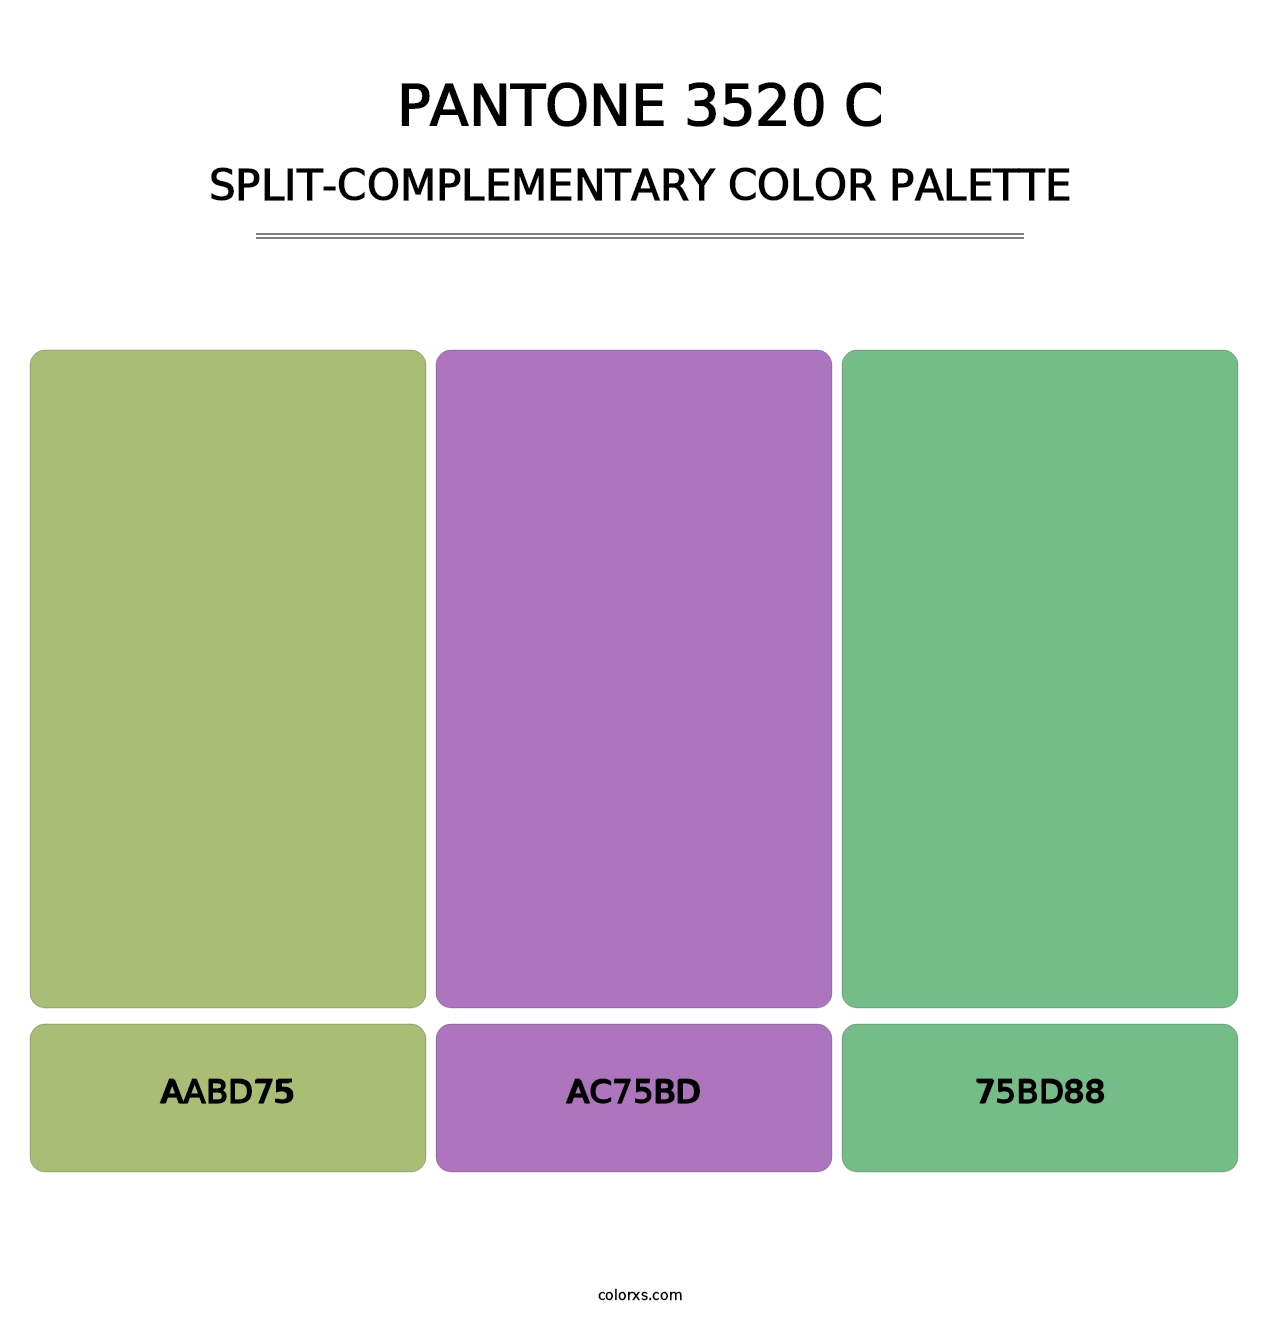 PANTONE 3520 C - Split-Complementary Color Palette